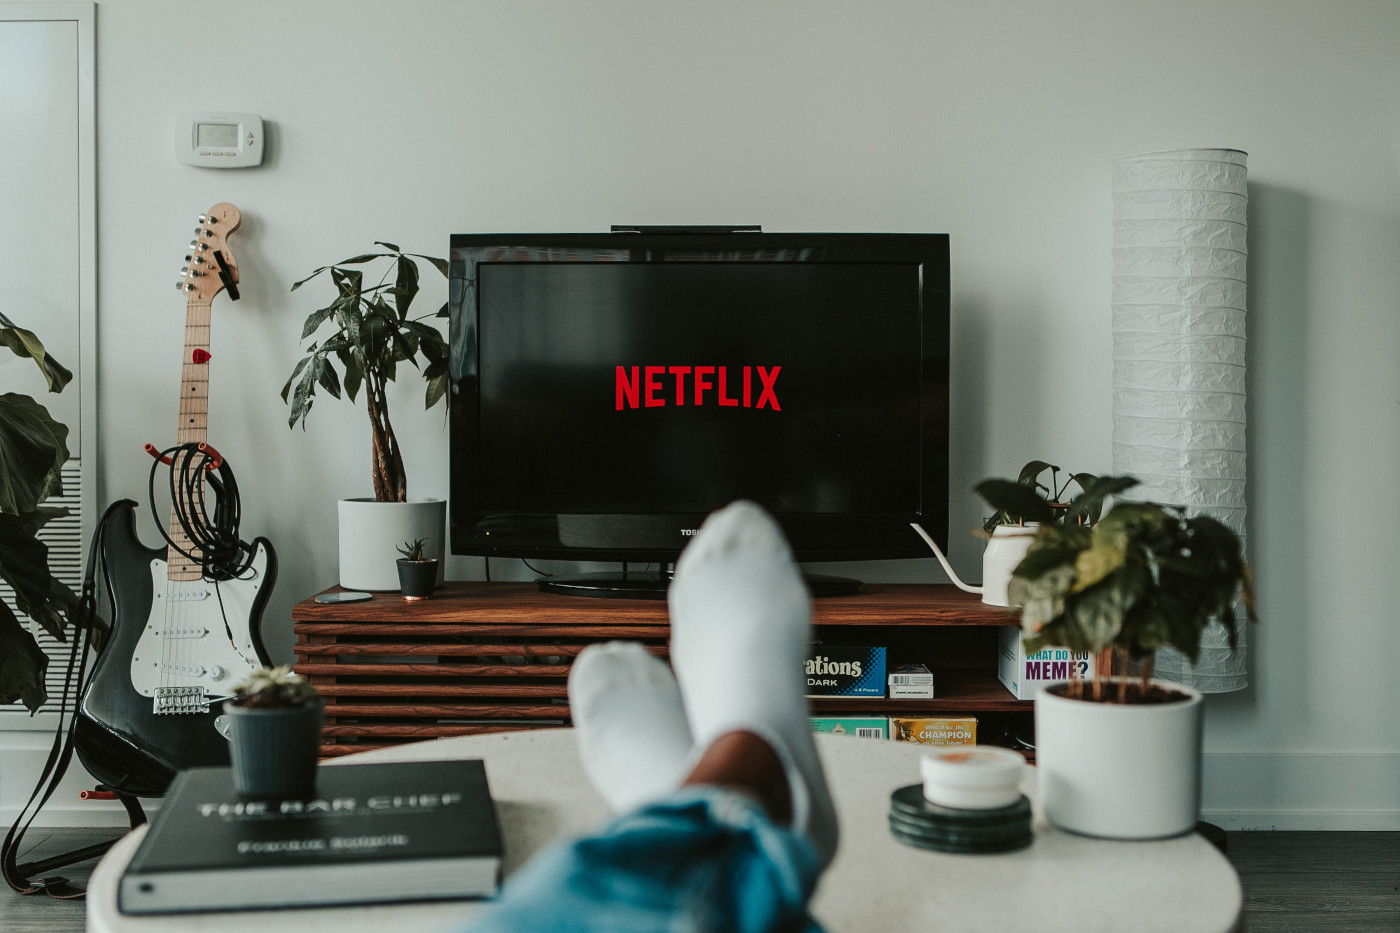 Eine Person sitzt auf einem Sofa, das Foto ist aus ihrer Perspektive aufgenommen, ihre Füße liegen auf einem Tisch. Sie schaut auf einen Fernseher, auf dem das Netflix-Logo zu sehen ist.